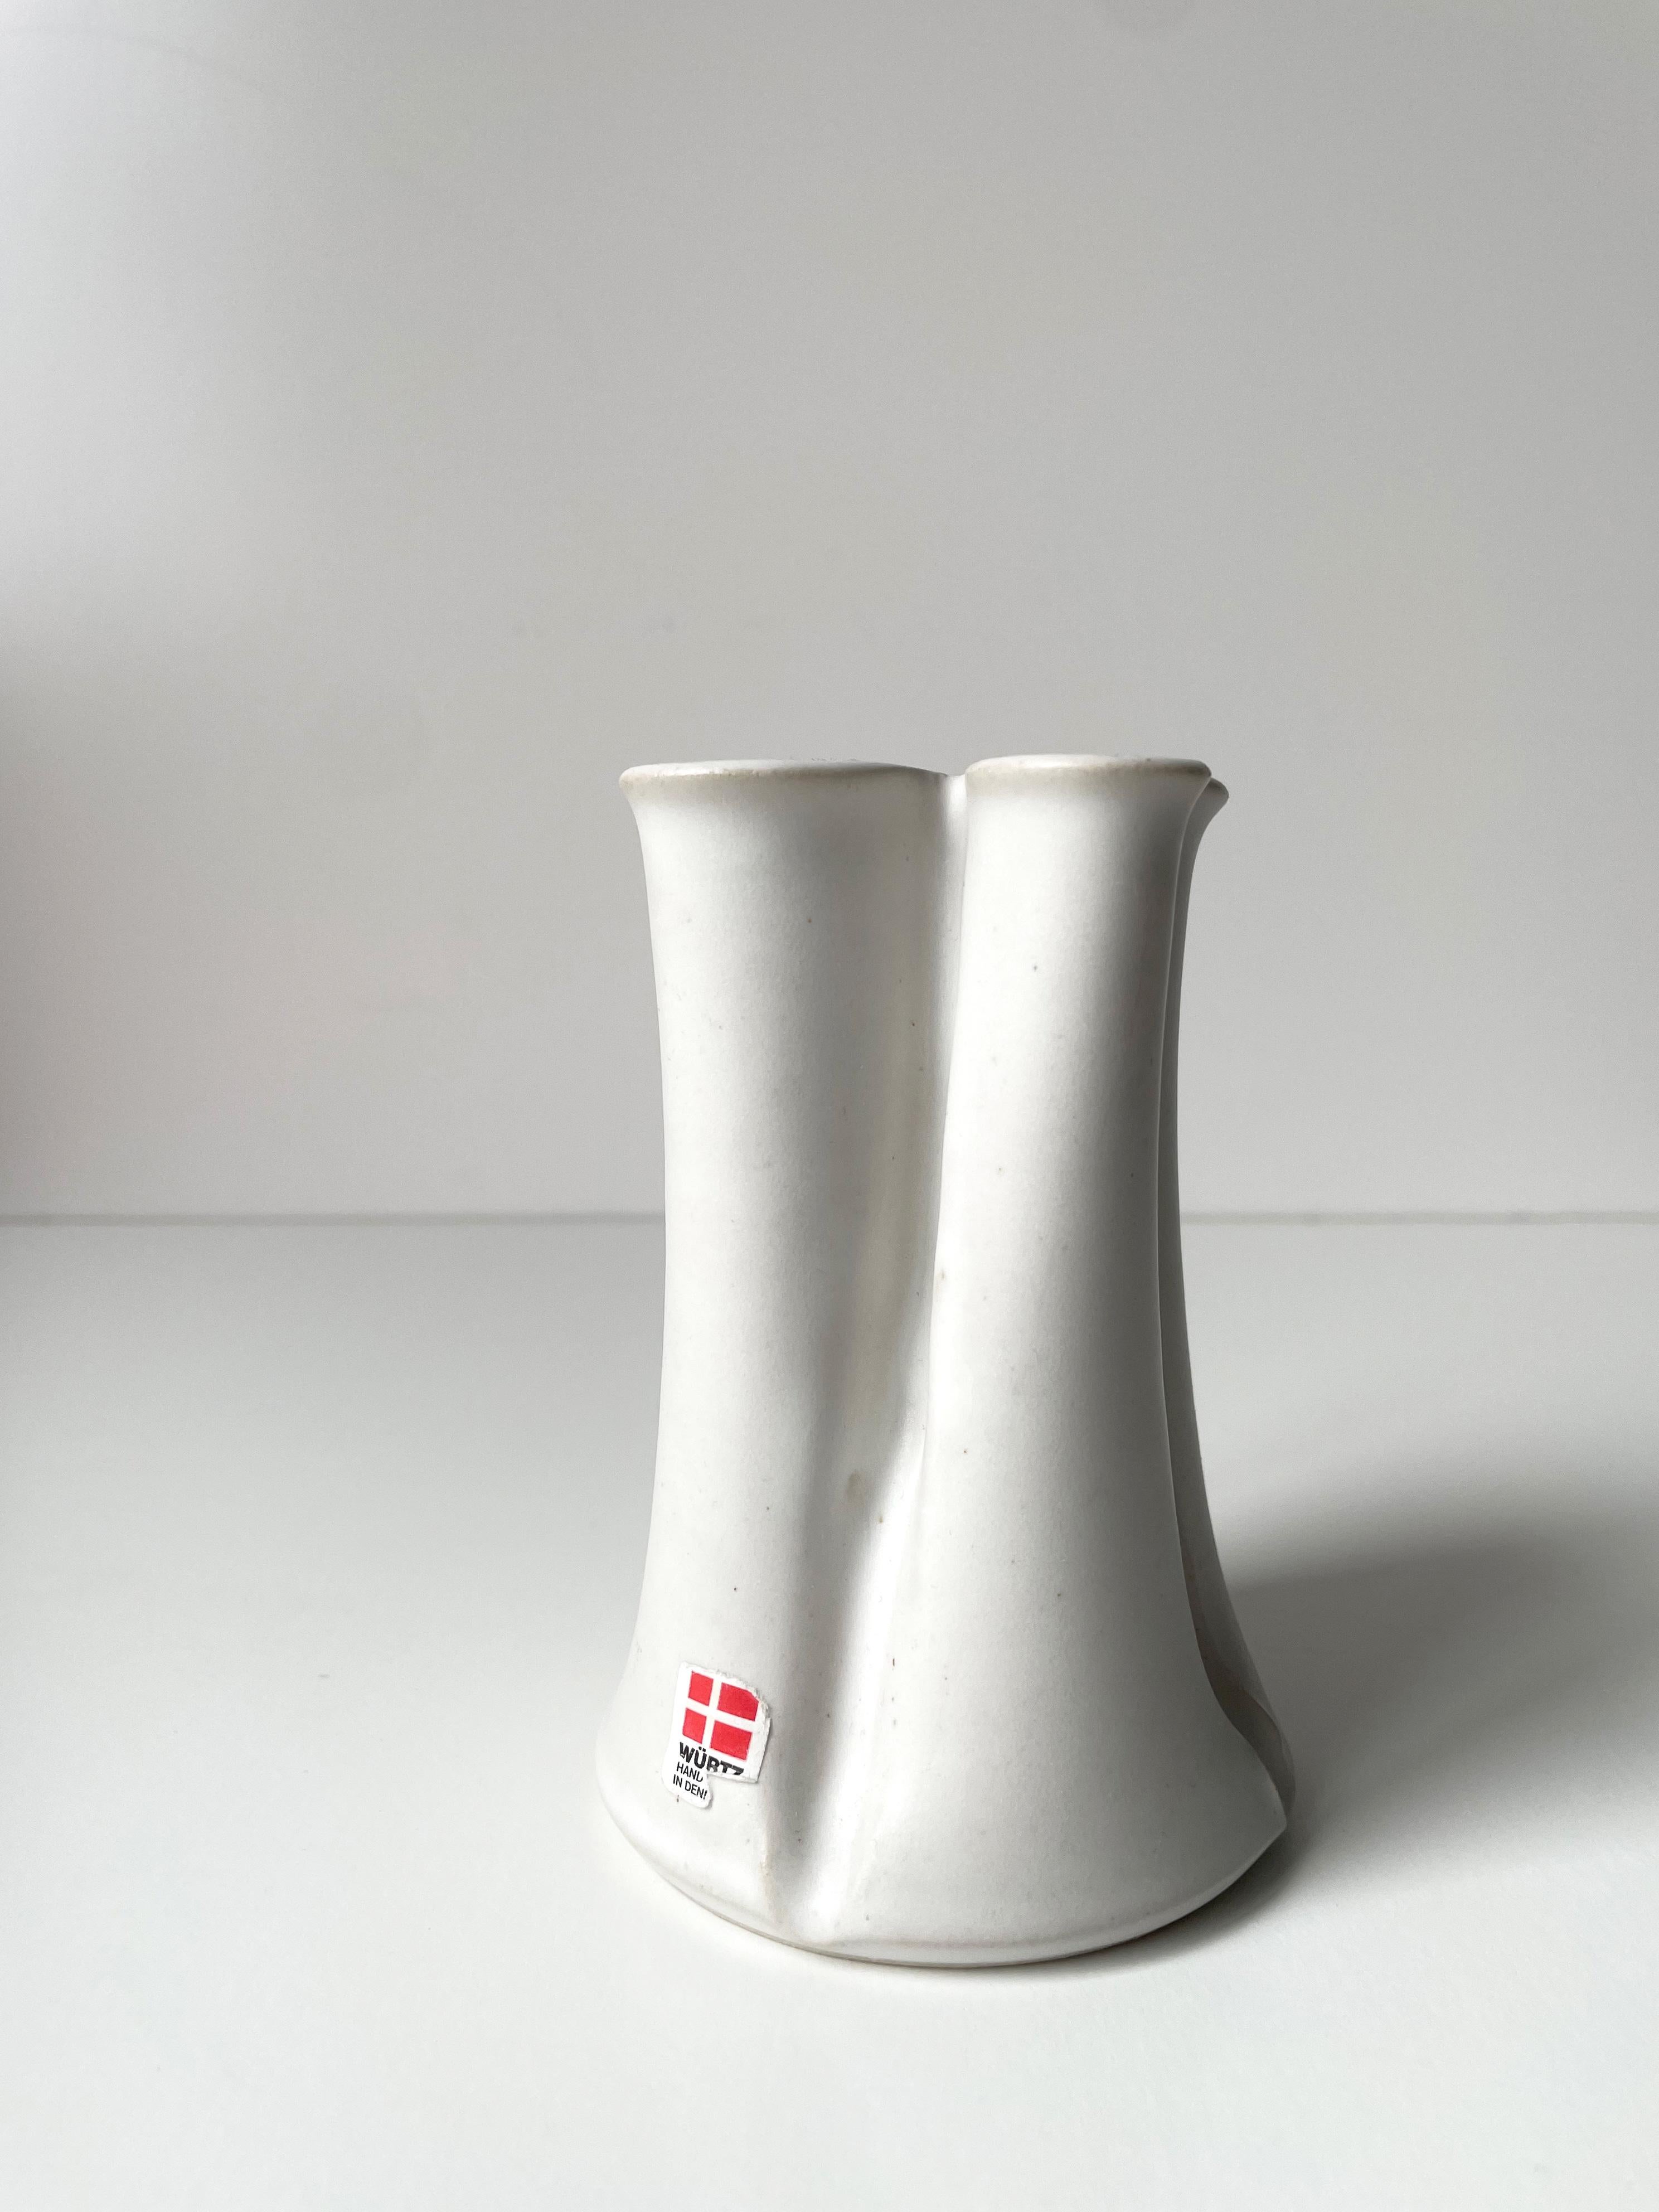 Set of Two Danish Organic Modern Ceramic Vases, Würtz, 1980s For Sale 3